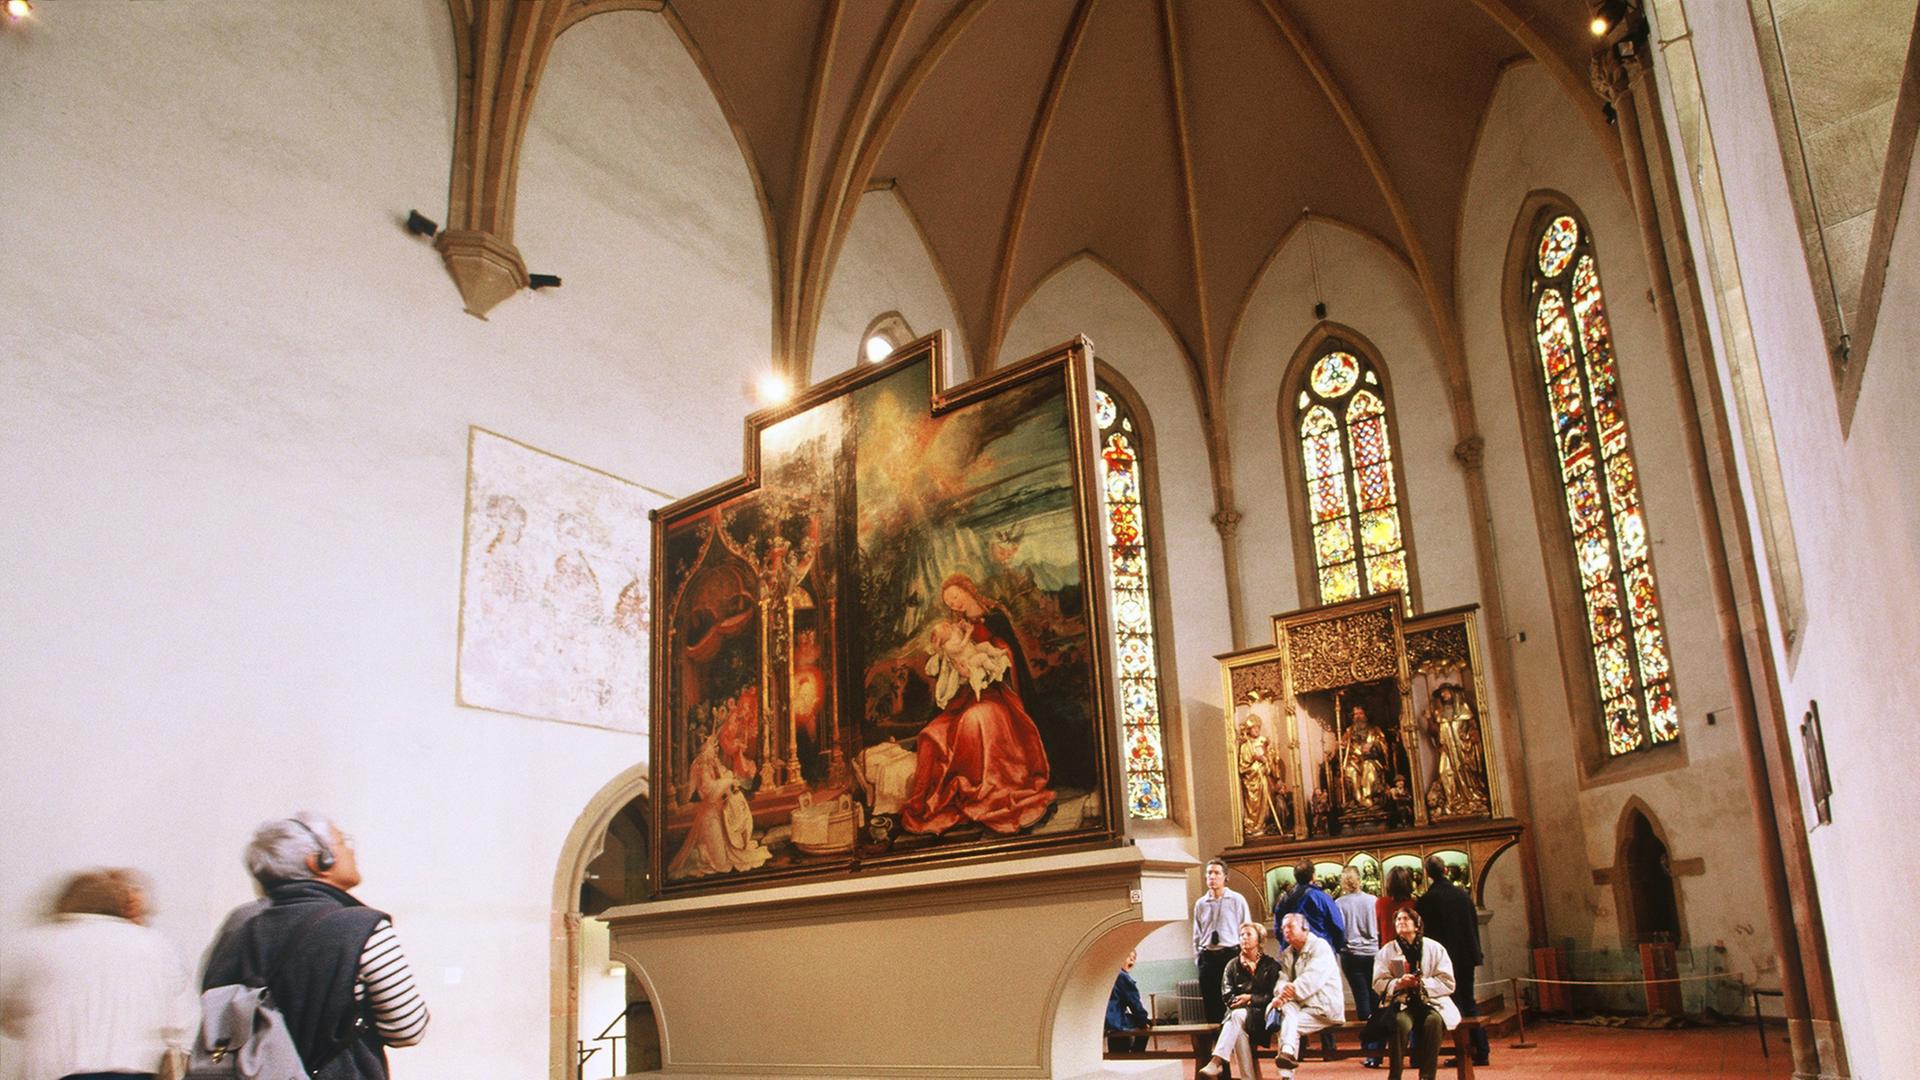 Blick auf Tafeln des "Isenheimer Altars", Gemälde der Kreuzigung Jesu im Altarraum einer Kirche